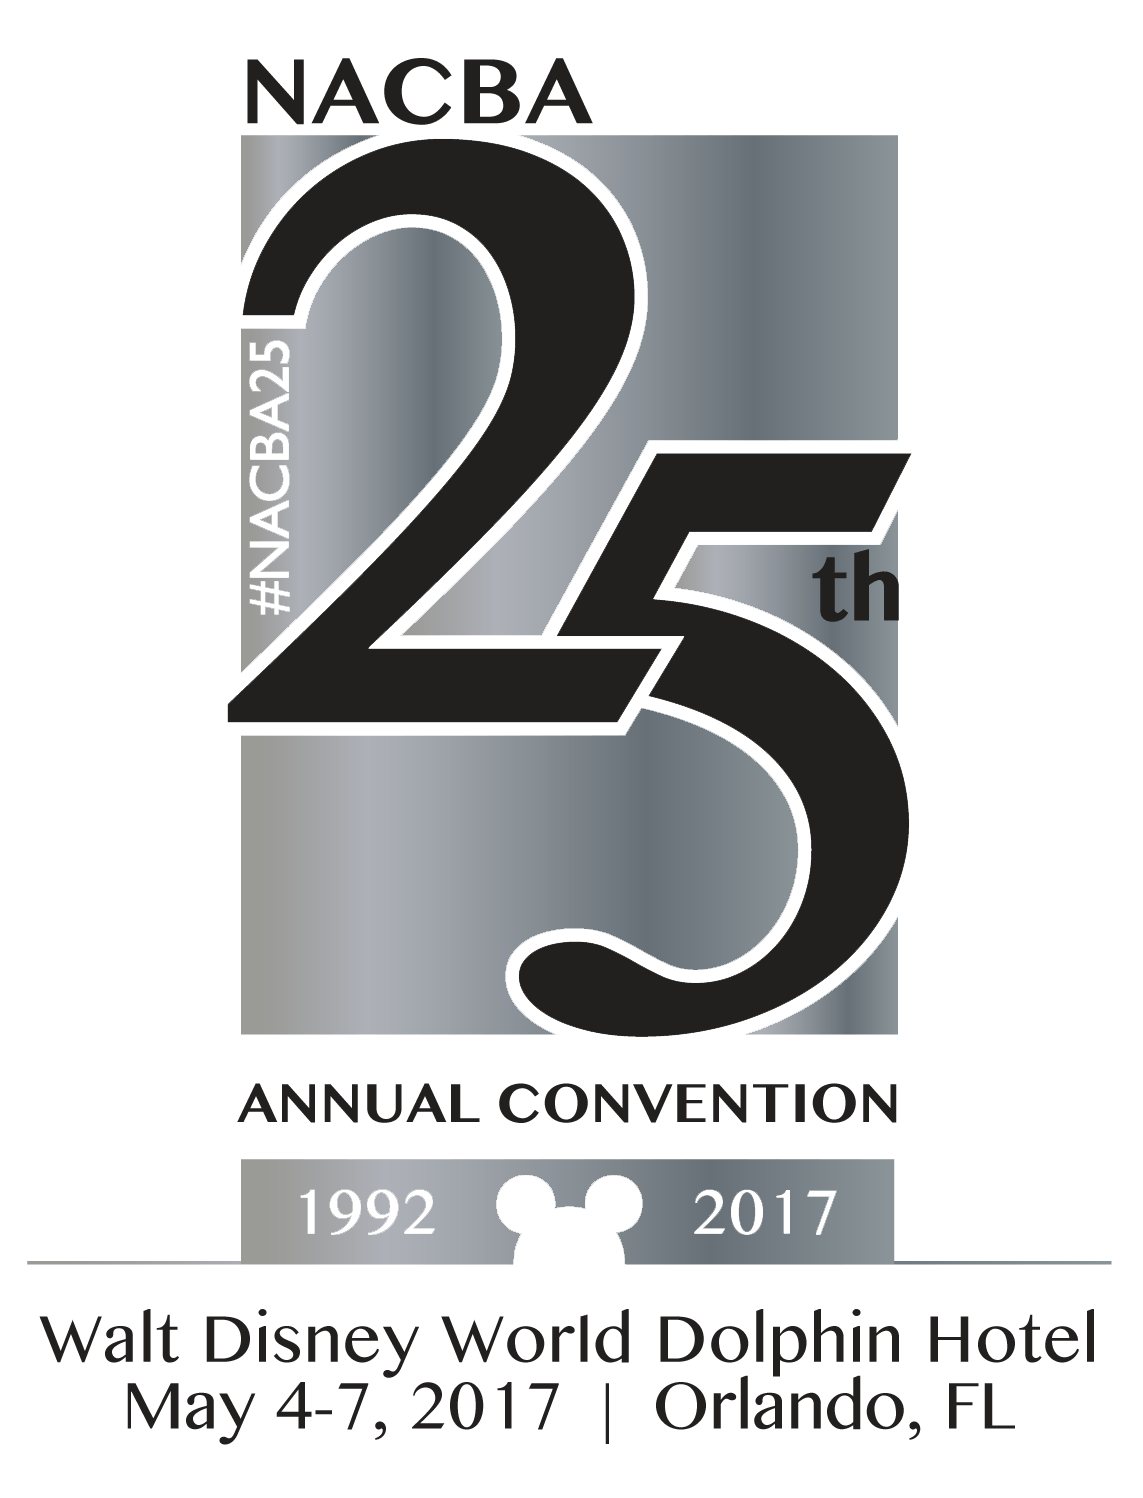 NACBA Logo - nacba-2017-convention-logo - NACBA